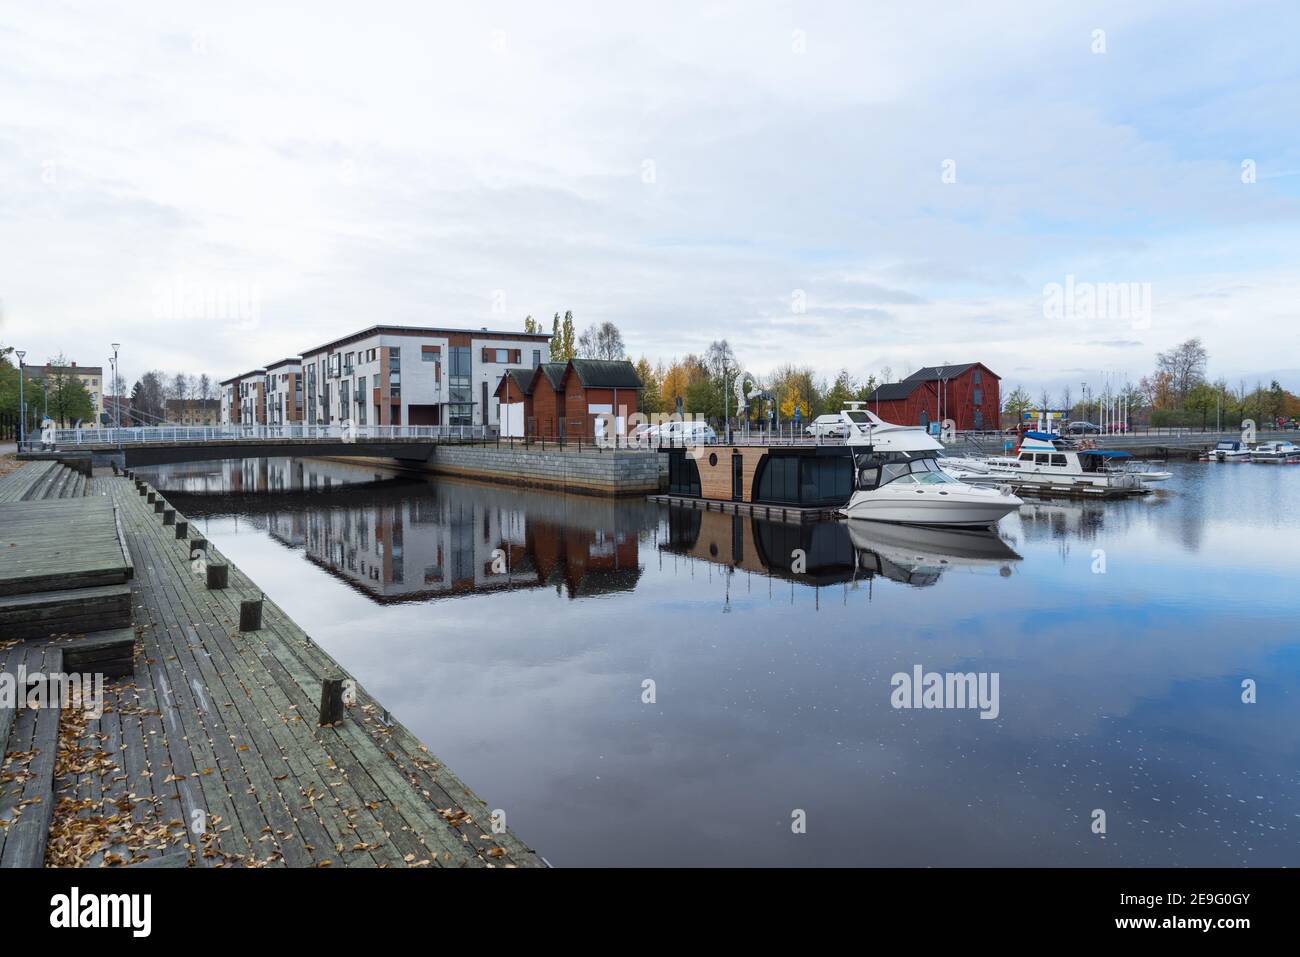 Pont à Kiikeli à Oulu avec des appartements modernes, propres et chers. Jetée en bois avec réflexion dans l'eau du canal. Péniche et navires dans le port Banque D'Images